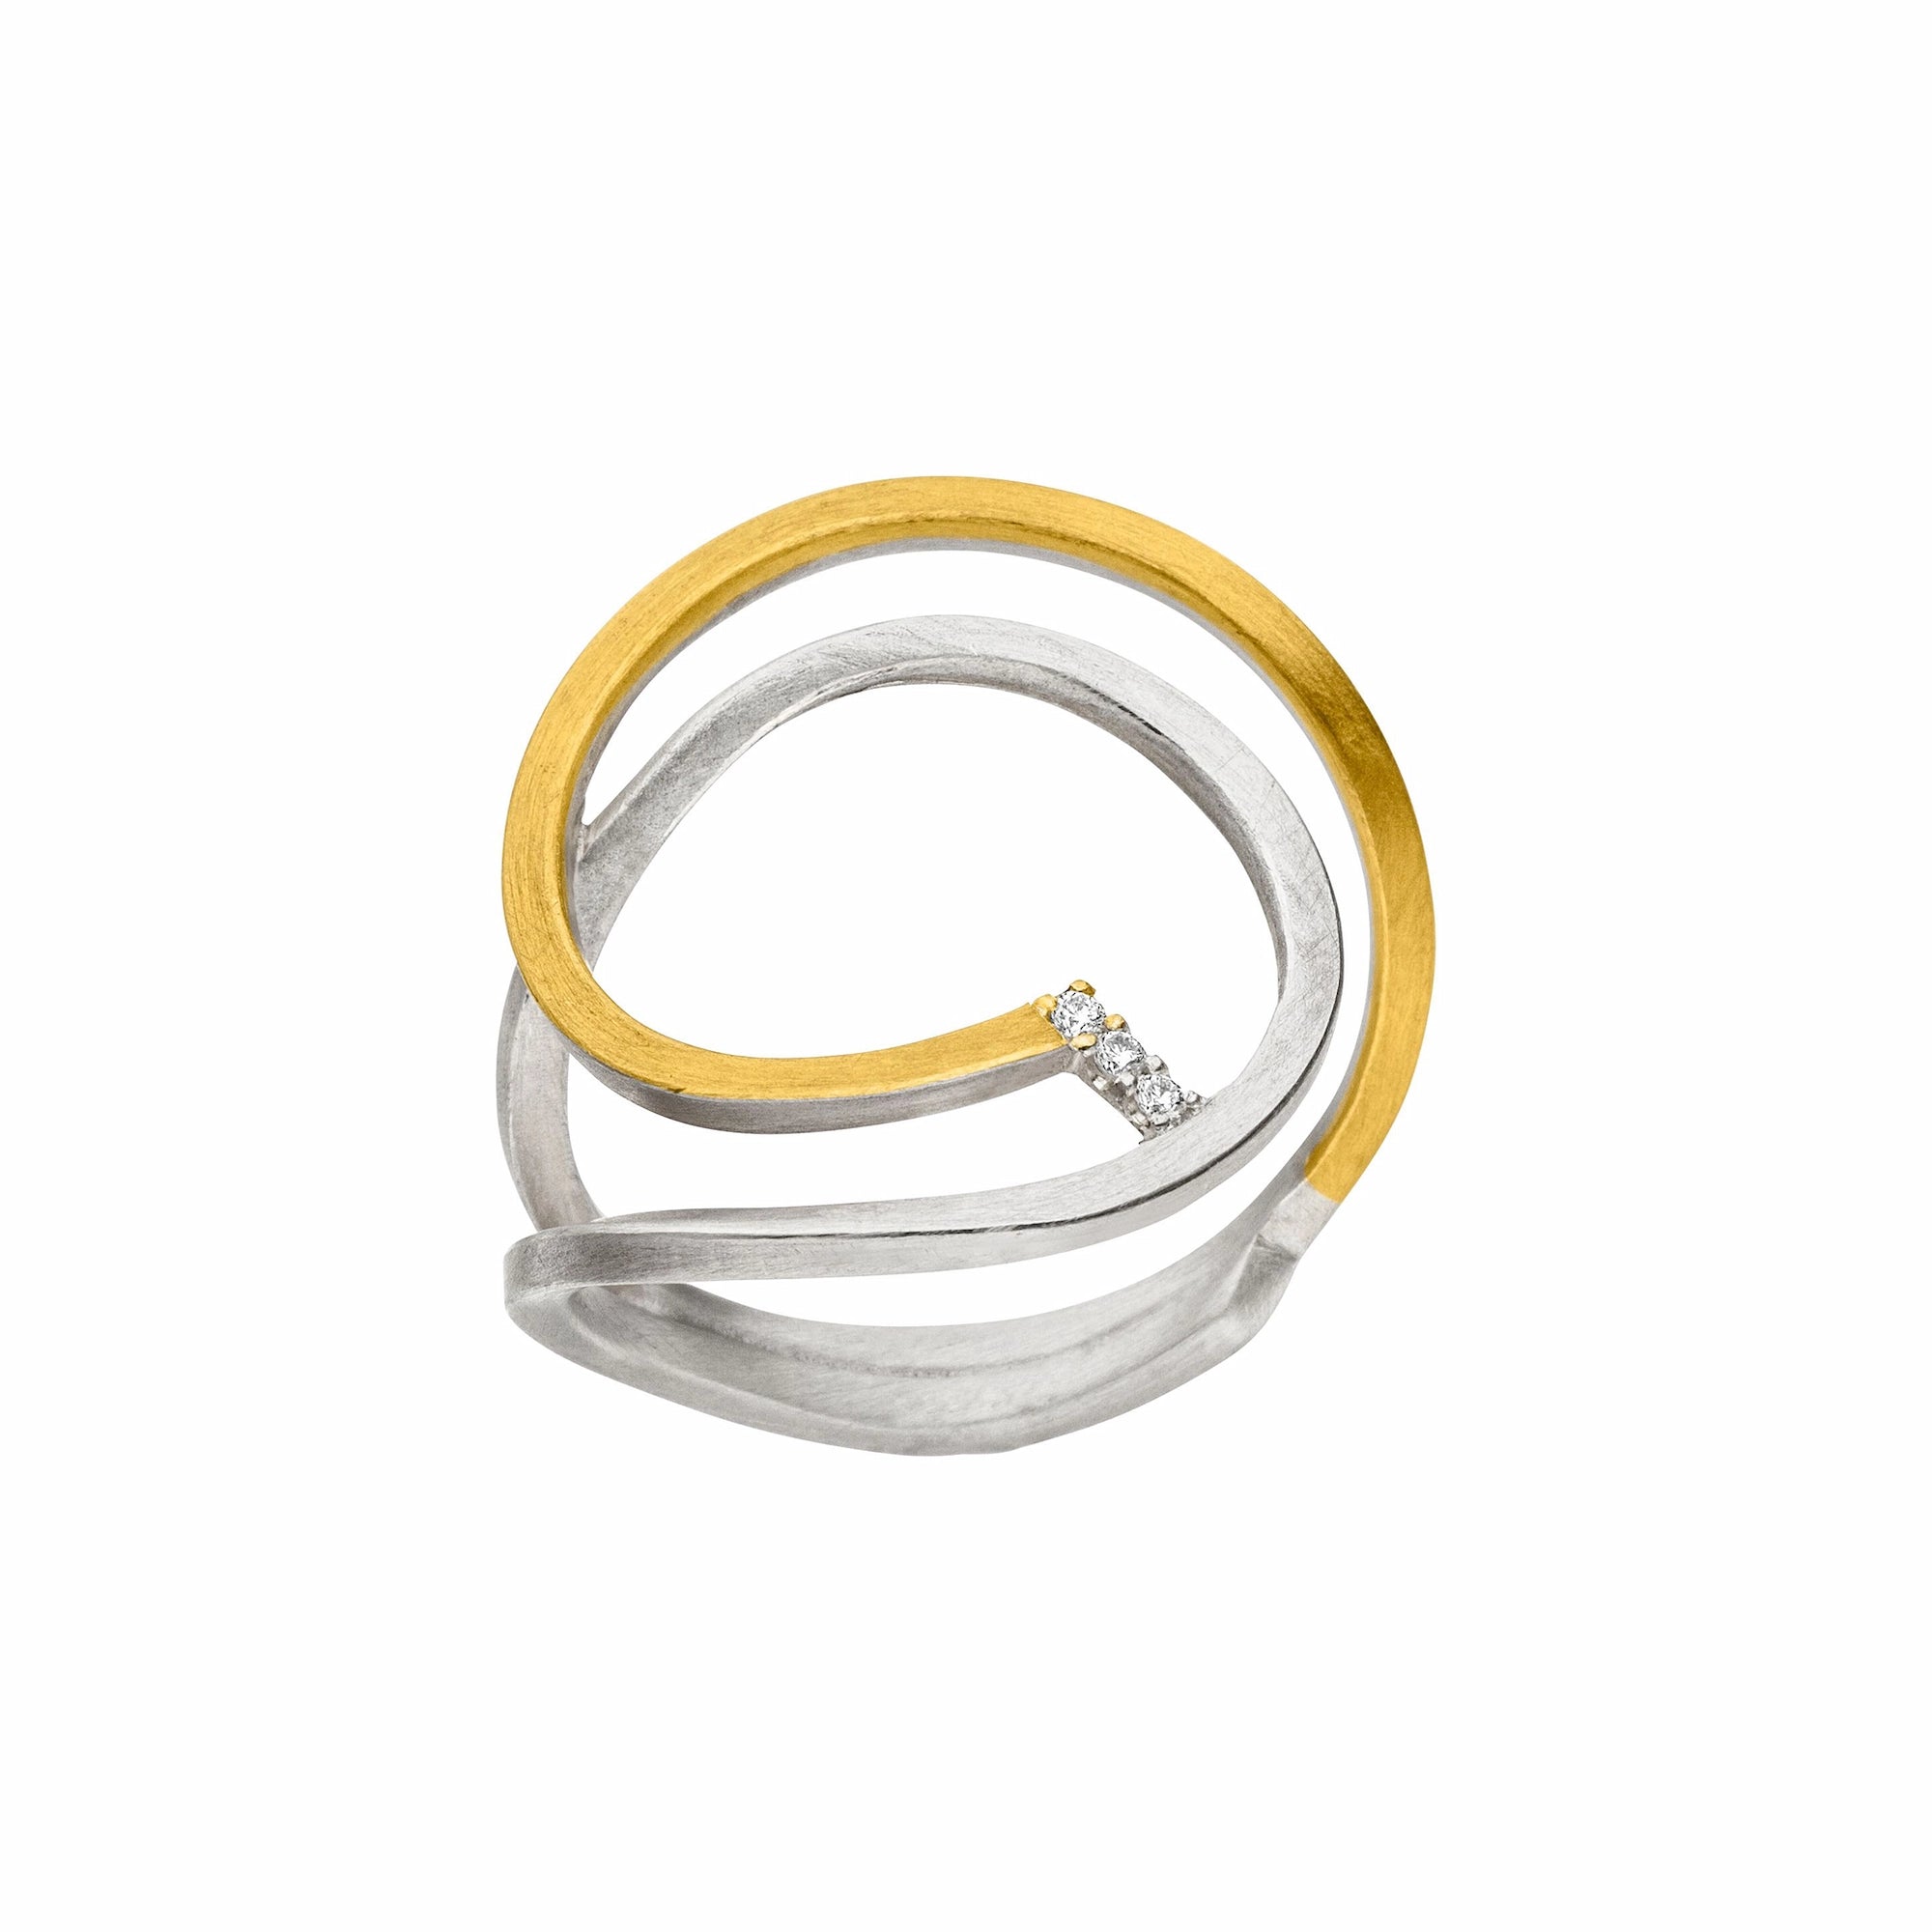 Künstlerischer Ring von Manu Schmuck, der mit drei kleinen Brillanten verziert wurde